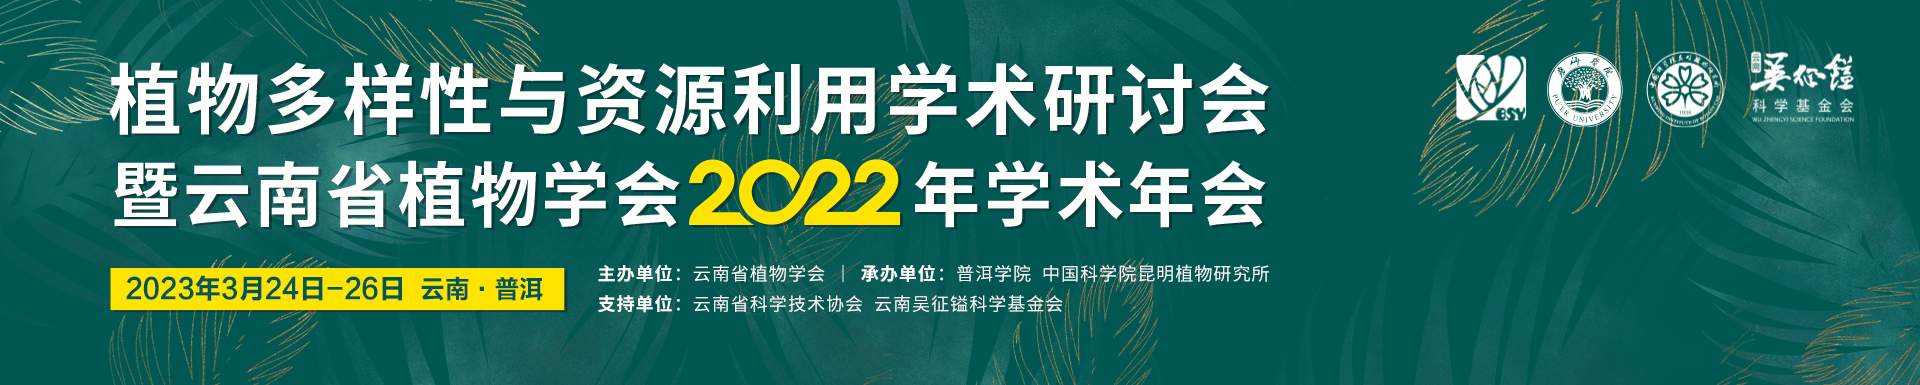 植物多样性与资源利用学术研讨会暨云南省植物学会2022年学术年会